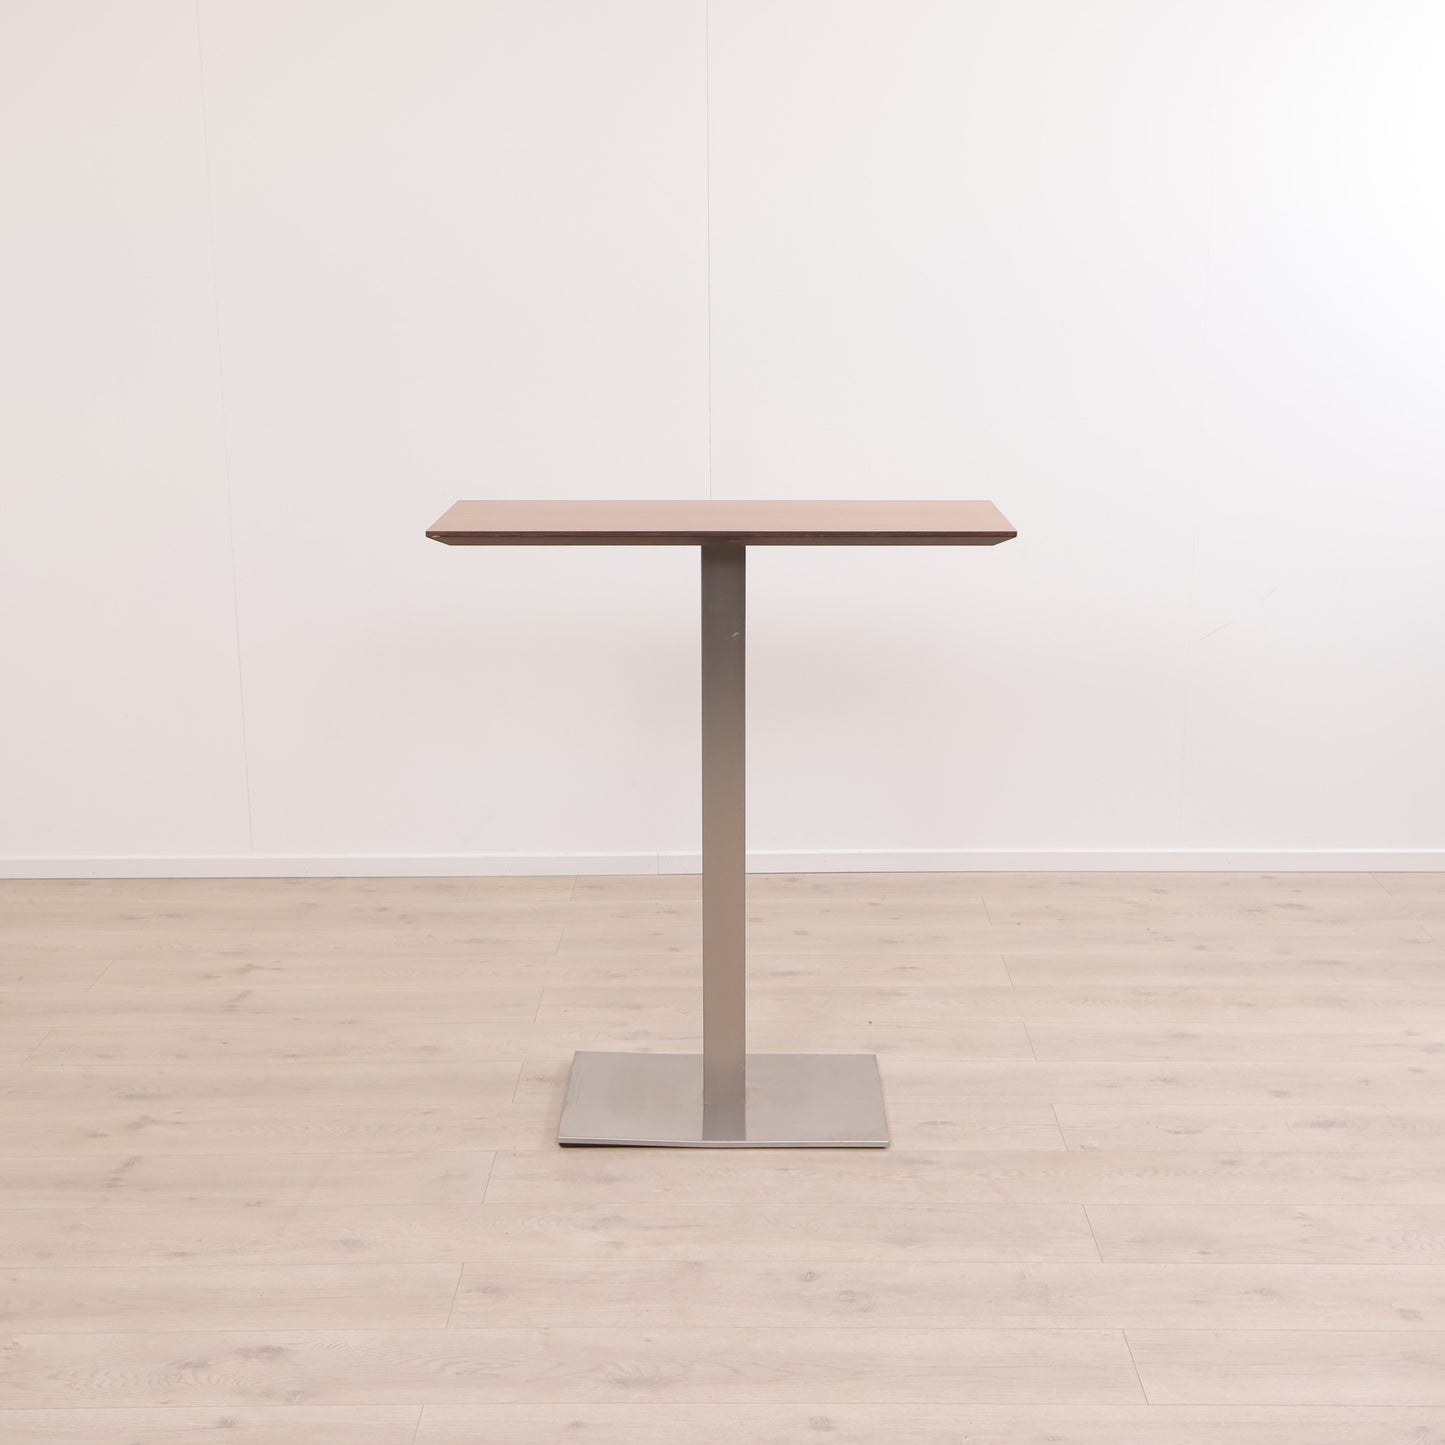 Ståbord med nøttebrun bordplate